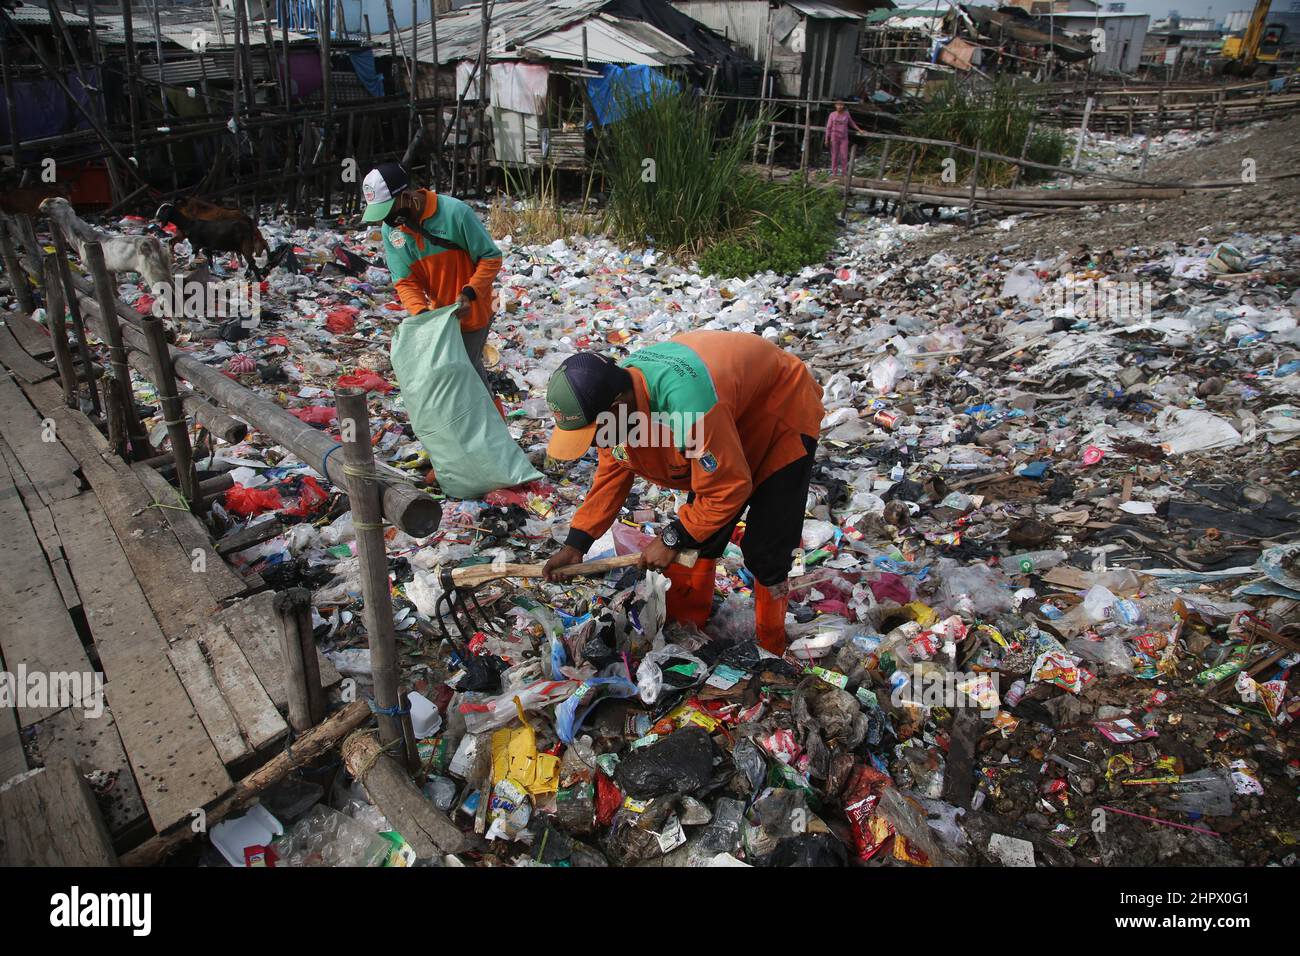 23 de febrero de 2022, Yakarta, Región Especial de la Capital de Yakarta, Indonesia: Varias casas en la zona de Kalibaru, Cilincing, Yakarta del Norte, Indonesia, están rodeadas de montones de basura. La pila de basura está dominada por los residuos domésticos, la mayoría de los cuales son residuos plásticos, que cubren la superficie del agua de mar y parecen un mar de basura y contaminan el medio ambiente en la zona. Esto se ve exacerbado por el número de residentes que todavía tiran basura alrededor del lugar. Cientos de limpiadores también asaltaron la basura en la aldea densamente poblada. (Imagen de crédito: © Kuncoro Widyo Rump Foto de stock